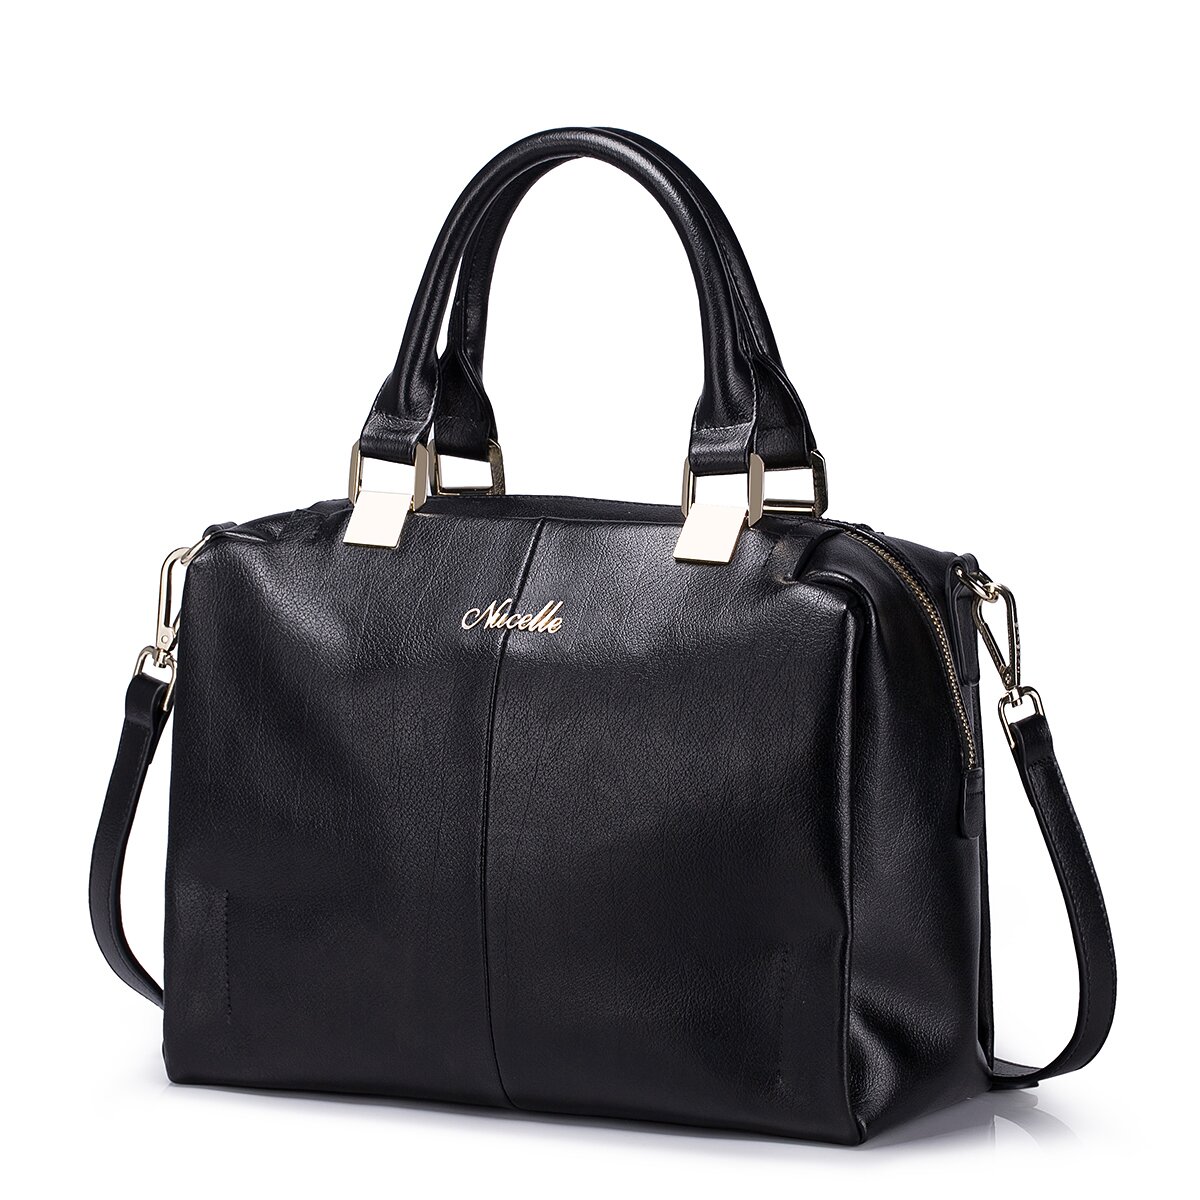 NUCELLE Solid color big size tote bag ladies leather bag black